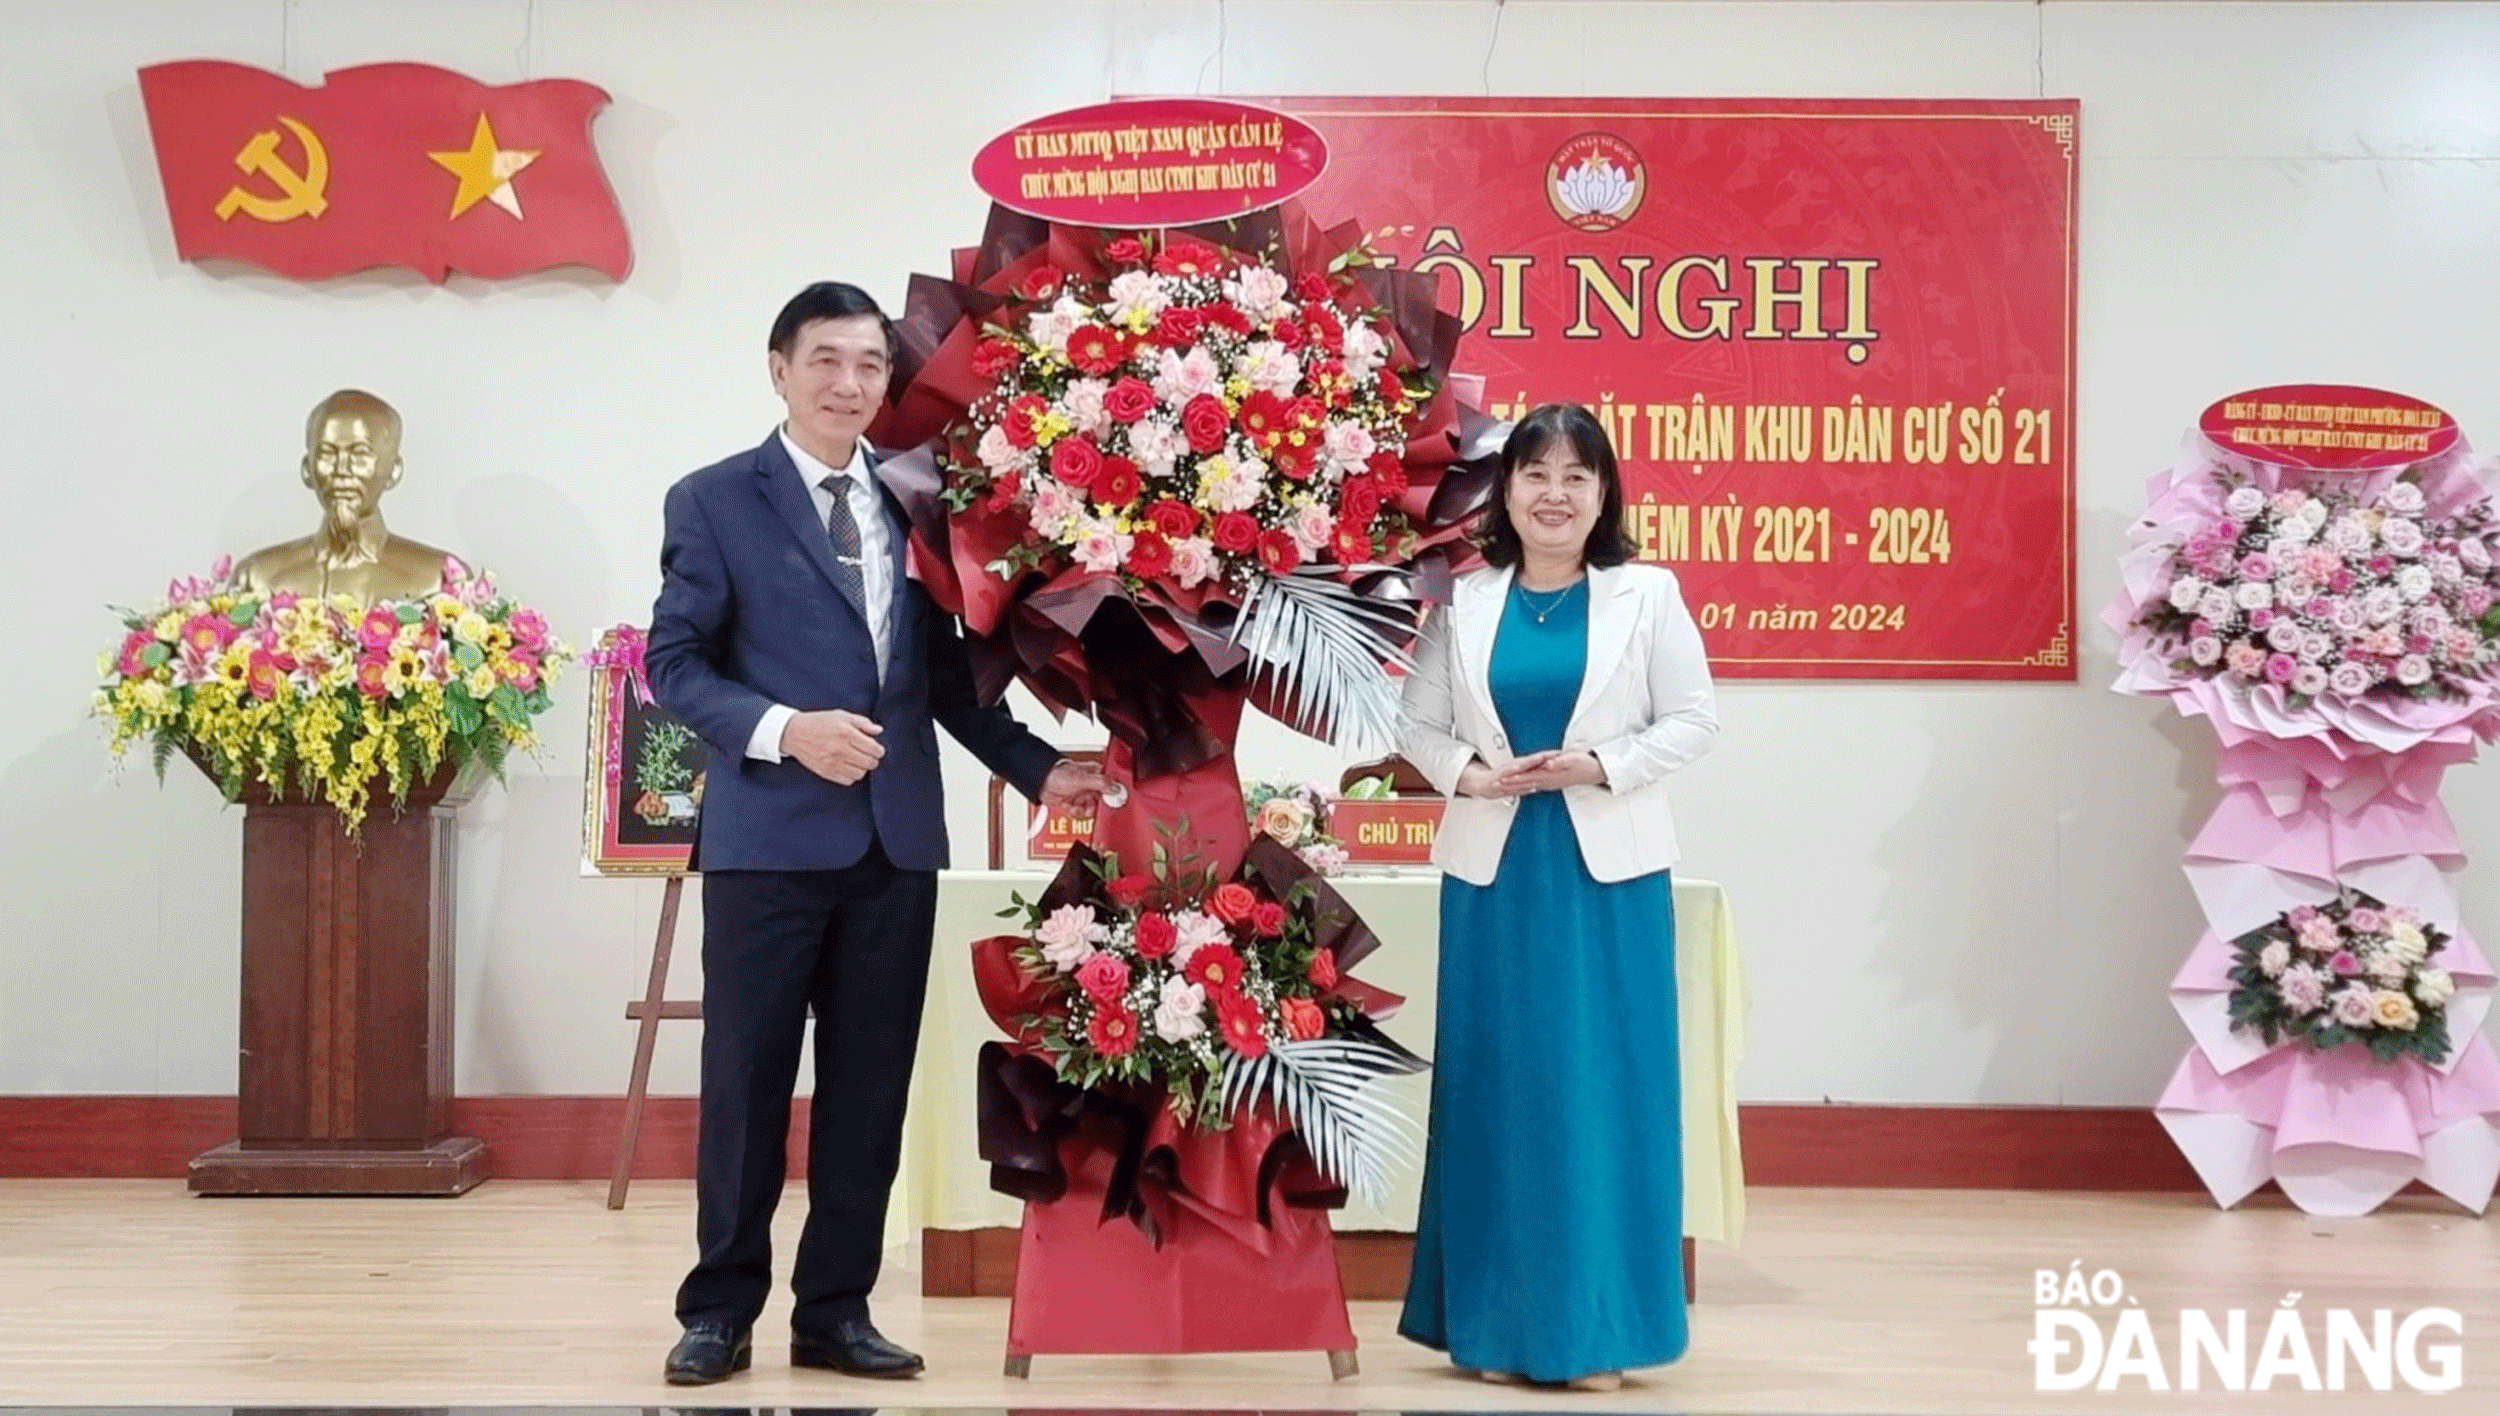 Chủ tịch Ủy ban MTTQ Việt Nam quận Cẩm Lệ Phạm Thị Nhàn  (bên phải) tặng hoa chúc mừng Ban công tác Mặt trận khu dân cư 21 (phường Hòa Xuân) tổ chức thành công hội nghị điểm tổng kết Ban công tác Mặt trận nhiệm kỳ 2021-2024. Ảnh: M.T